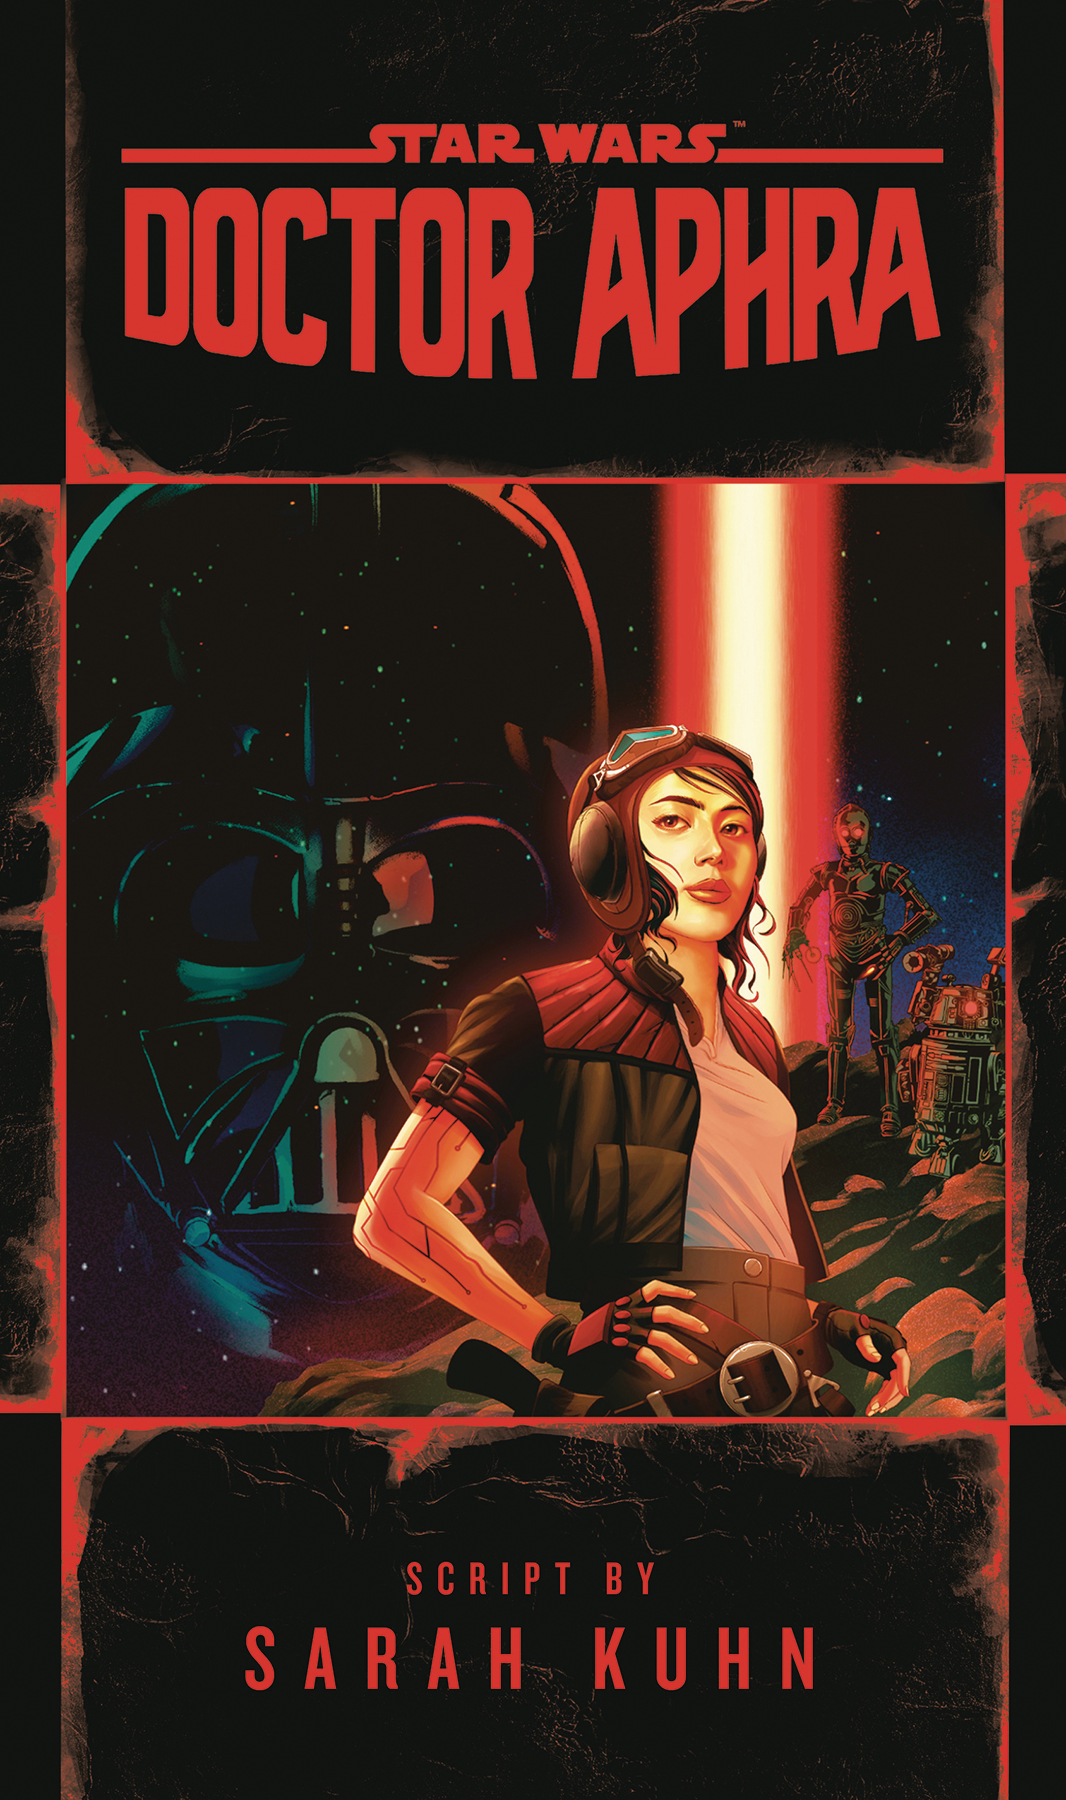 Star Wars: Doctor Aphra Hardcover Novel